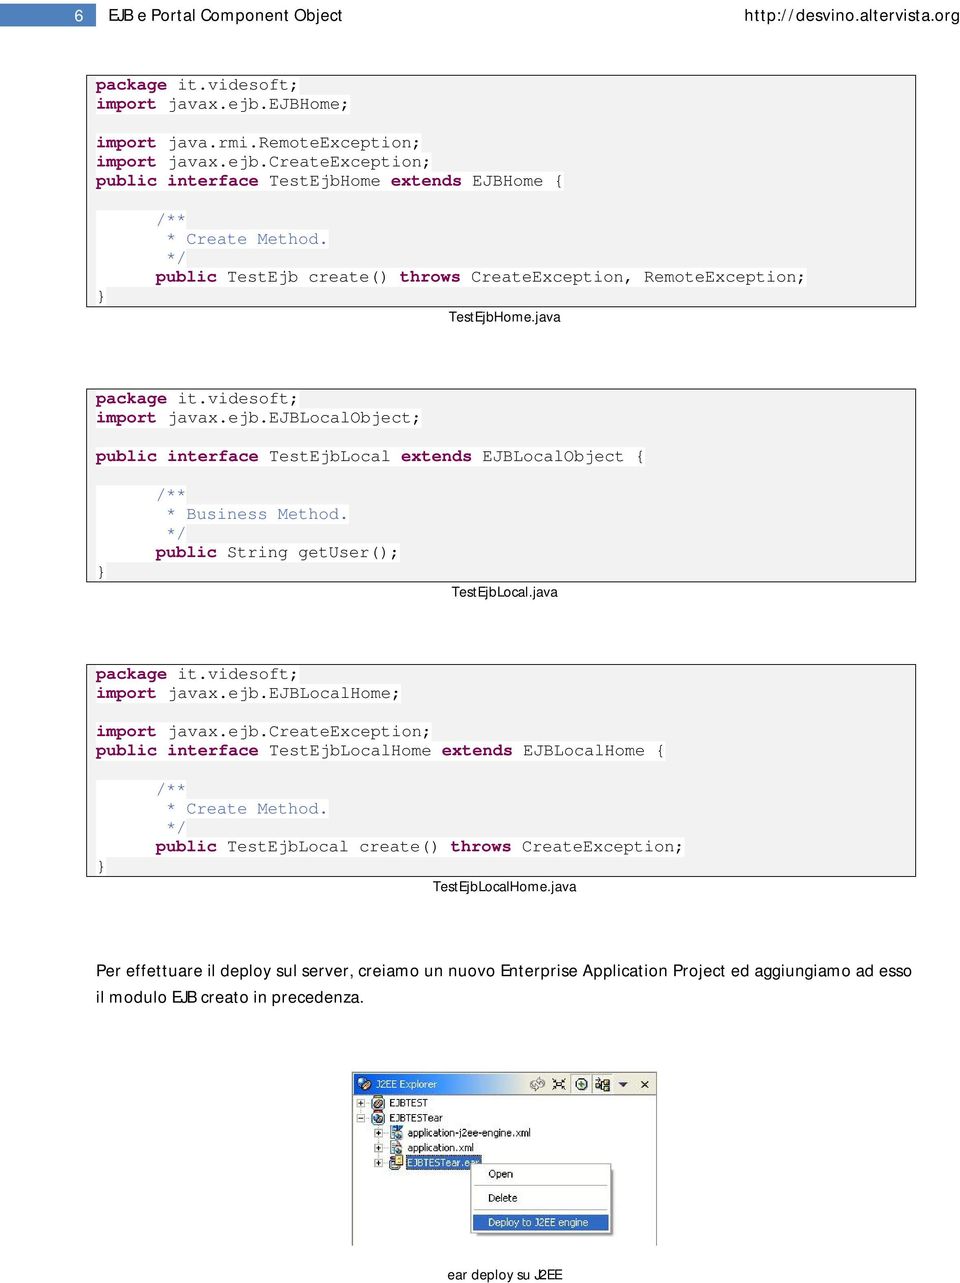 public String getuser(); TestEjbLocal.java import javax.ejb.ejblocalhome; import javax.ejb.createexception; public interface TestEjbLocalHome extends EJBLocalHome { * Create Method.